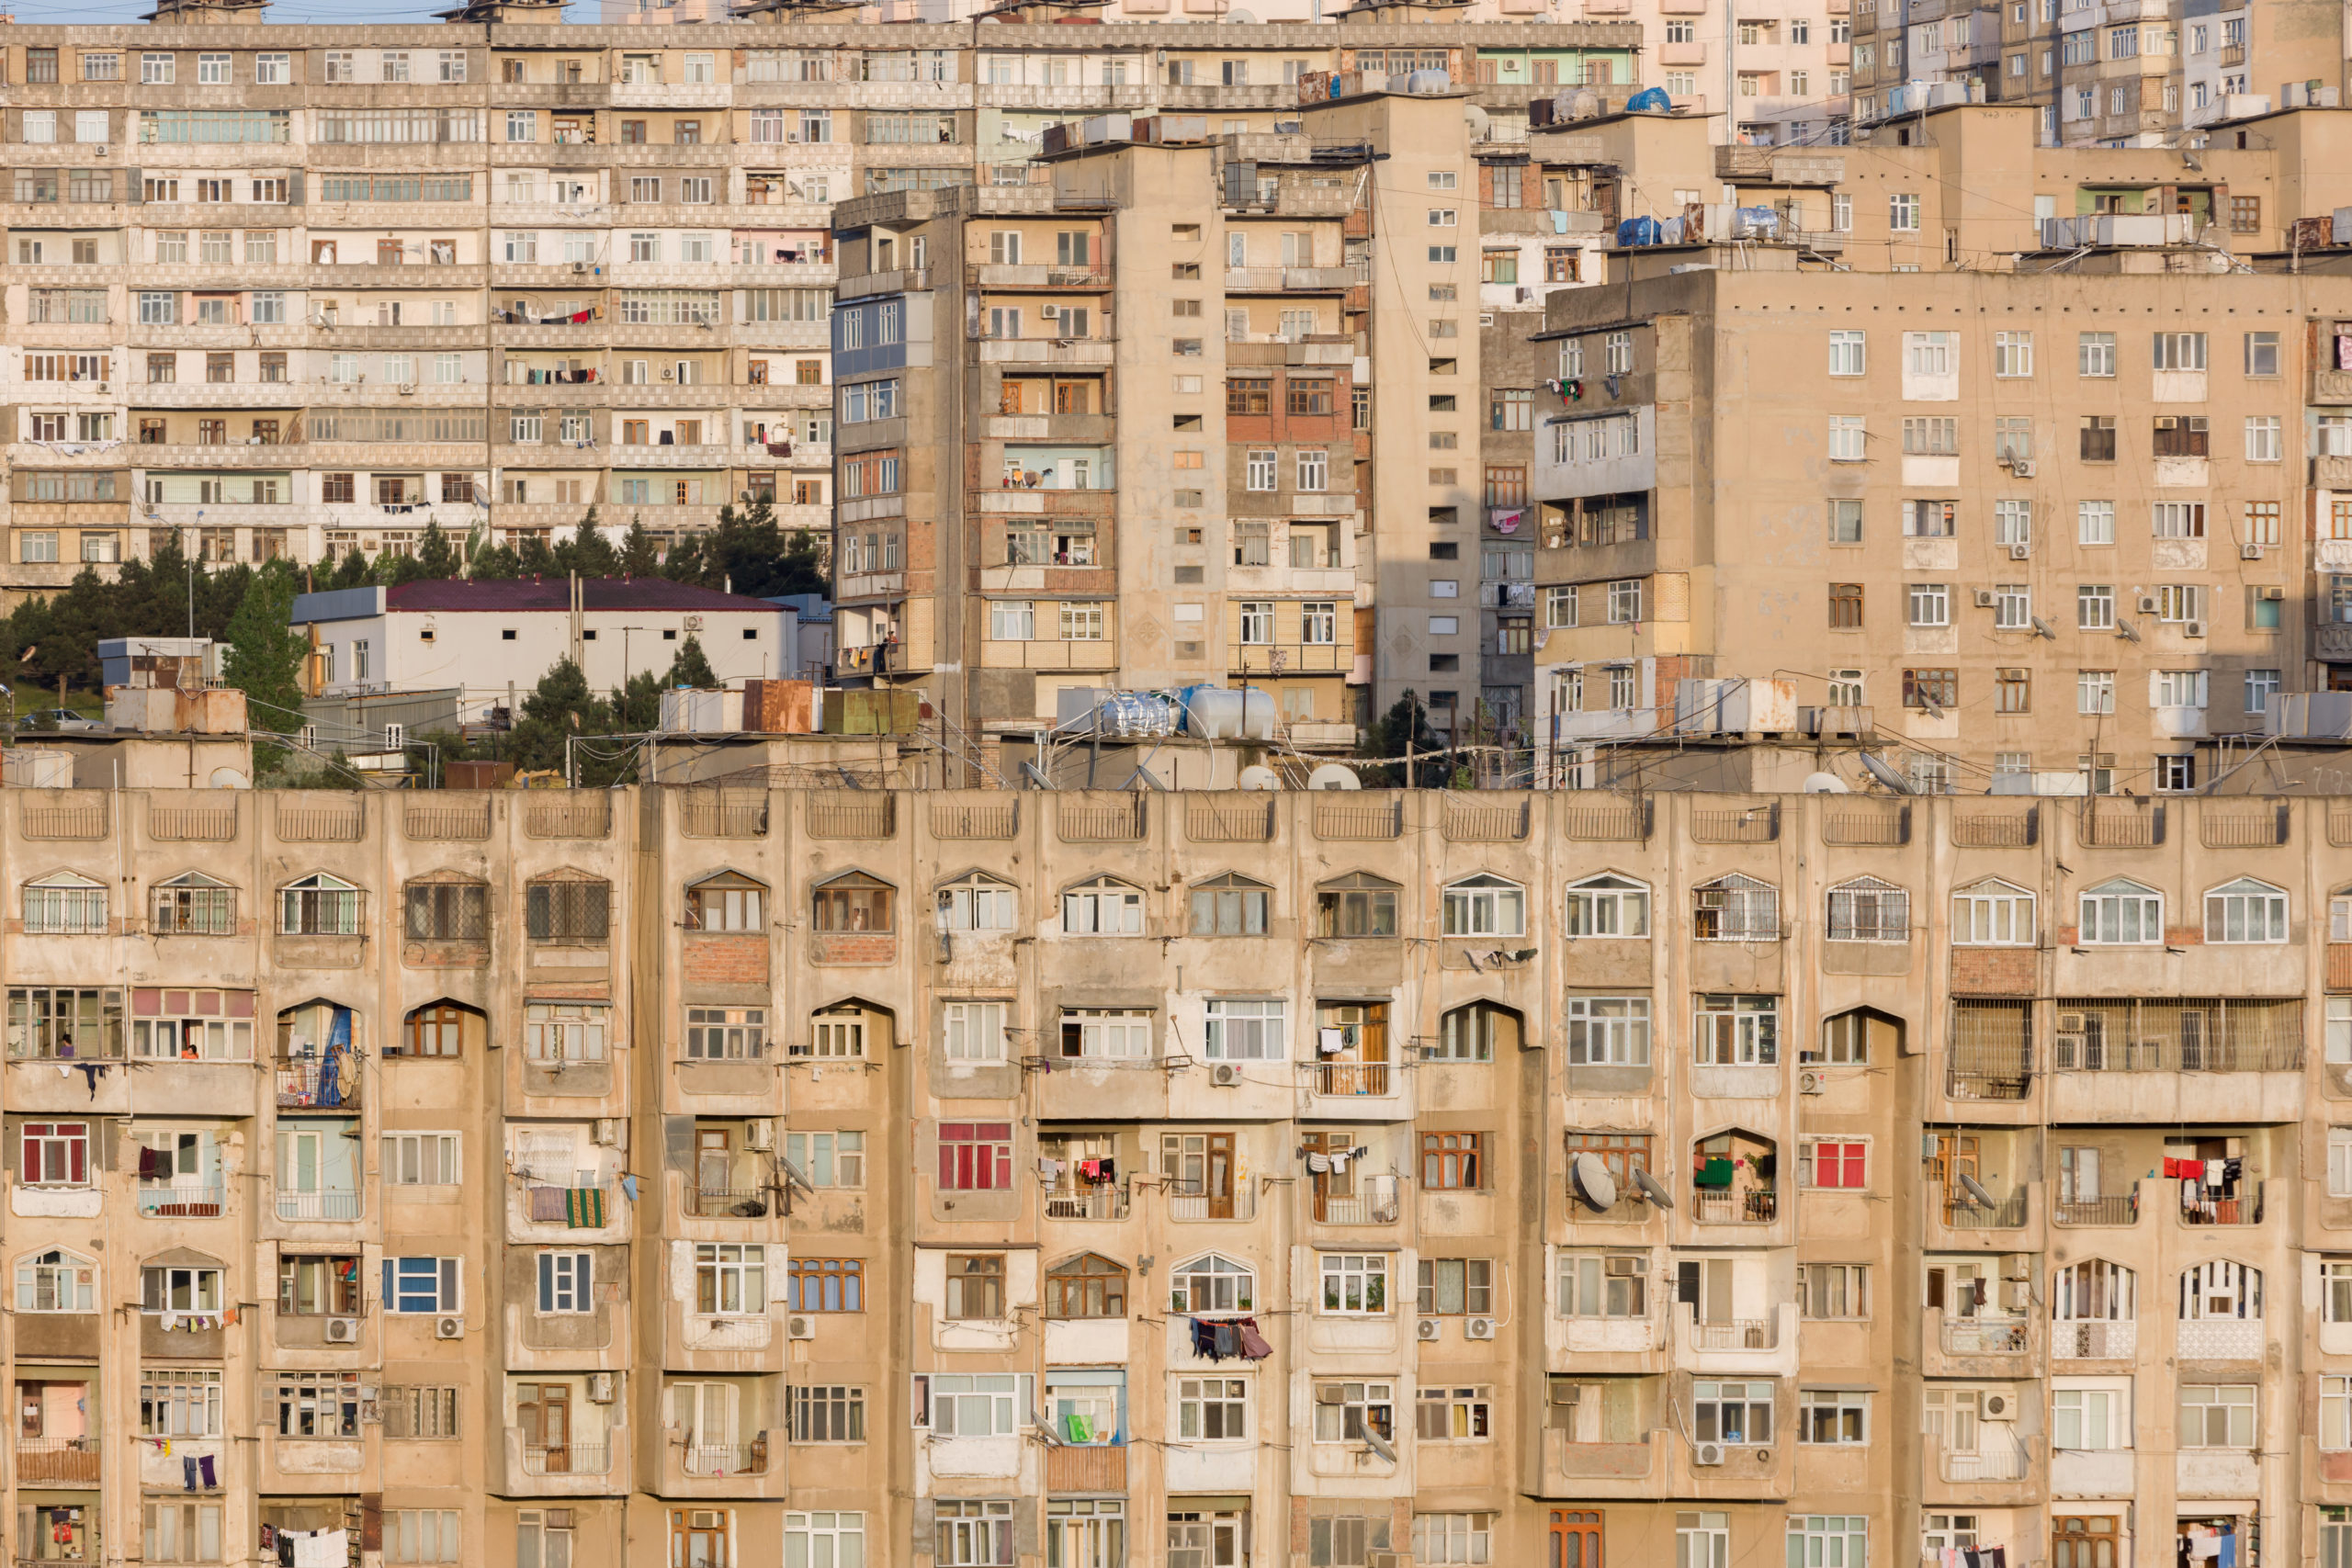 Photo of buildings in Baku